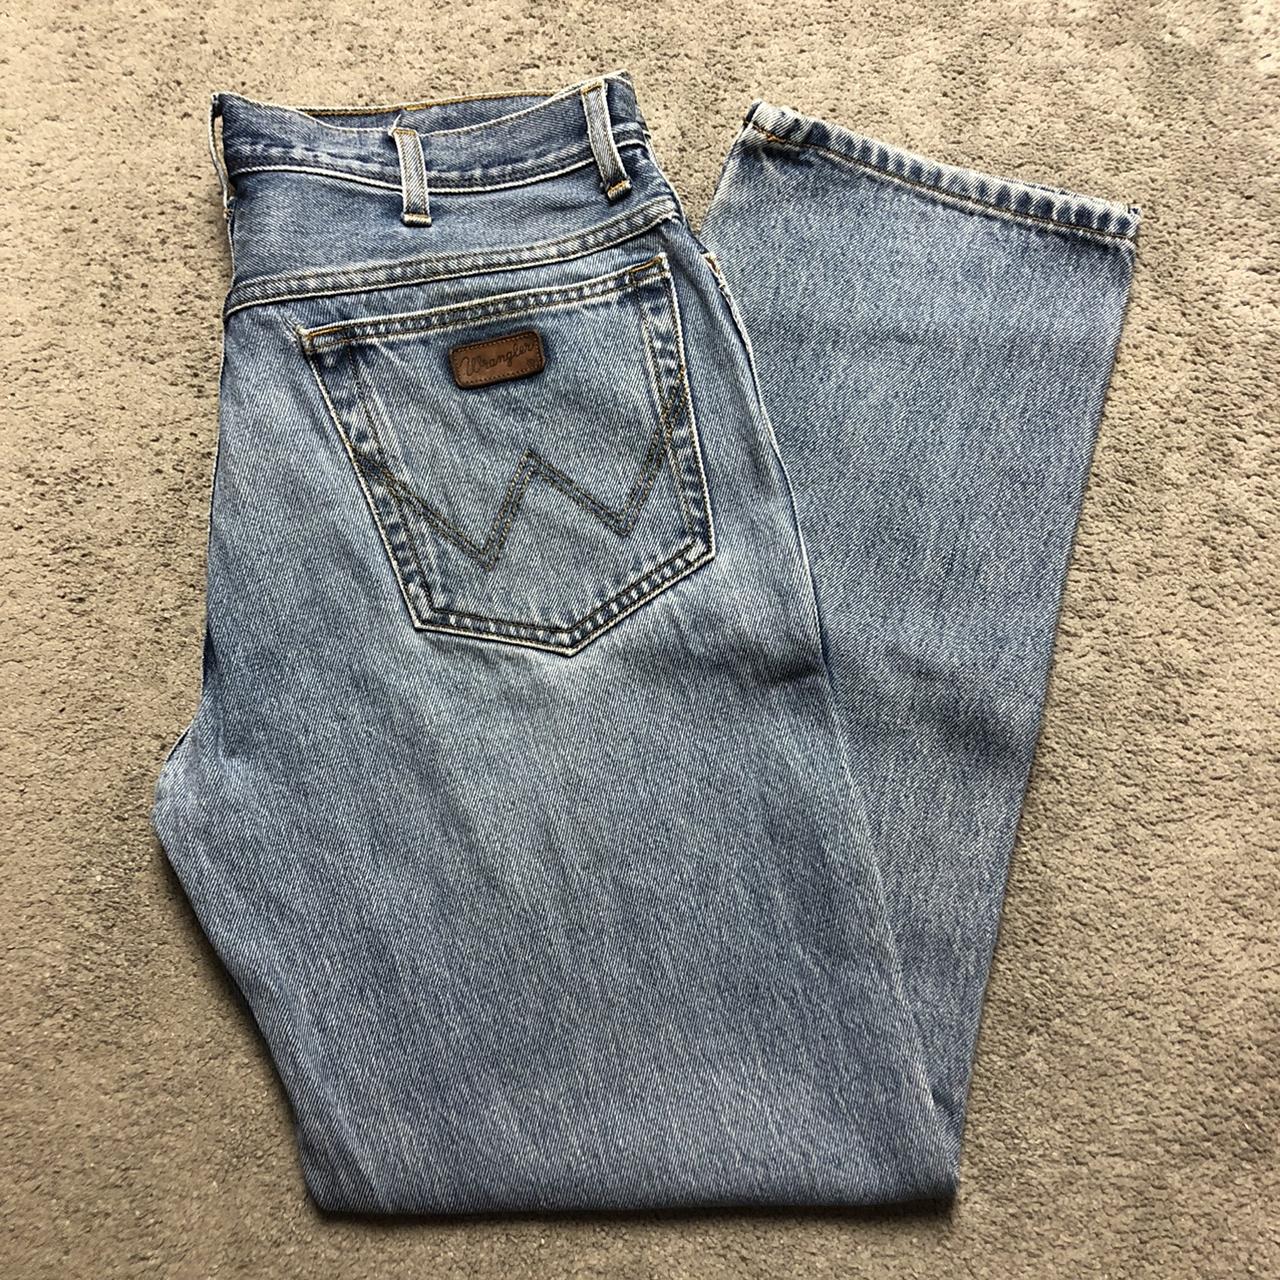 Vintage Wrangler light wash denim jeans. Great... - Depop